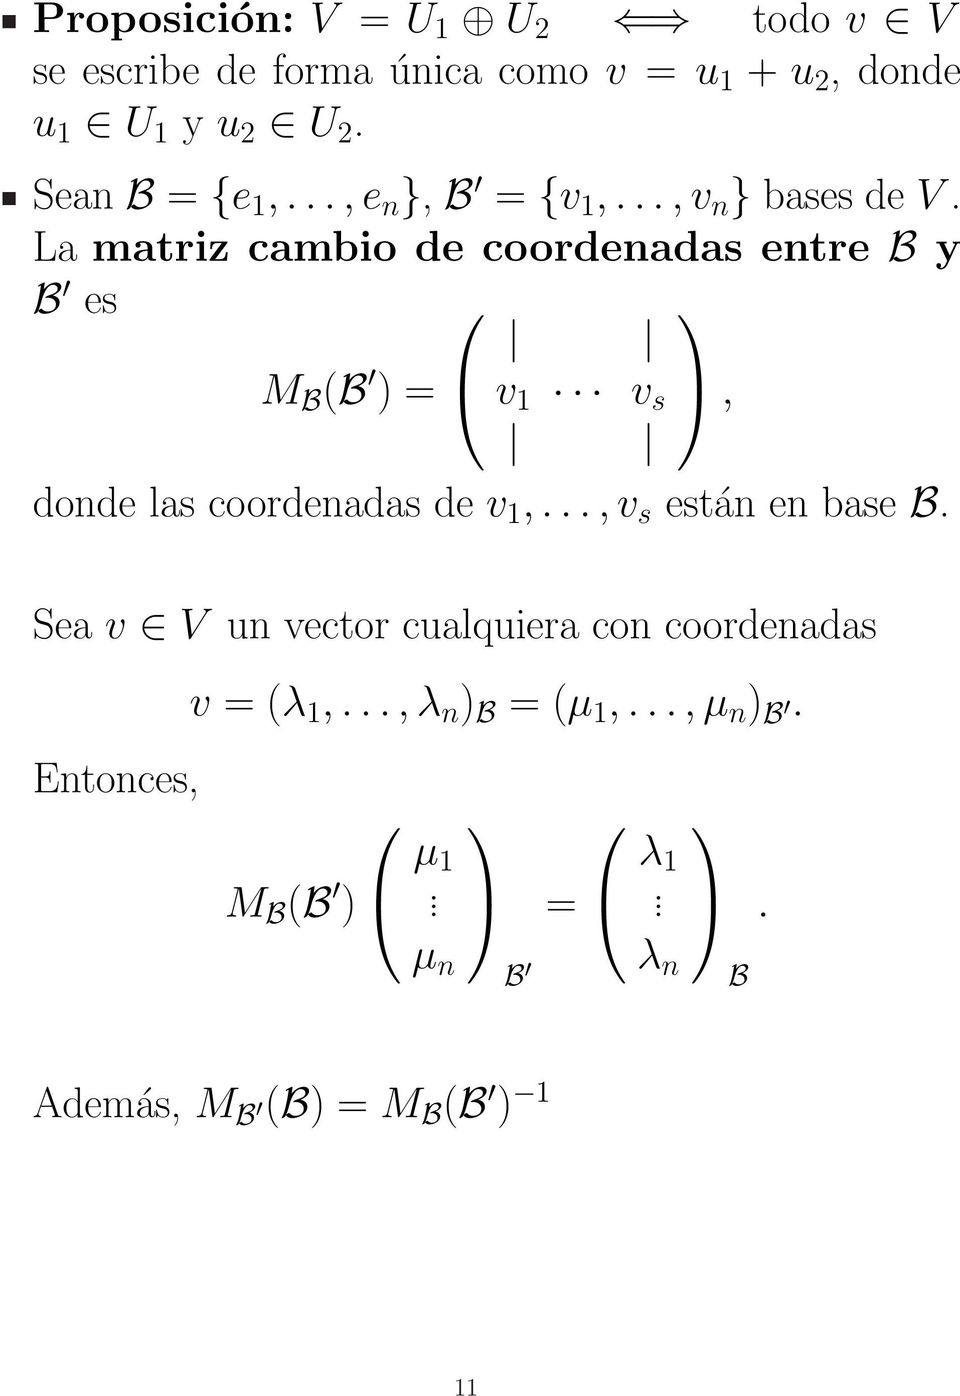 La matriz cambio de coordenadas entre B y B es M B (B ) = v 1 v s, donde las coordenadas de v 1,.